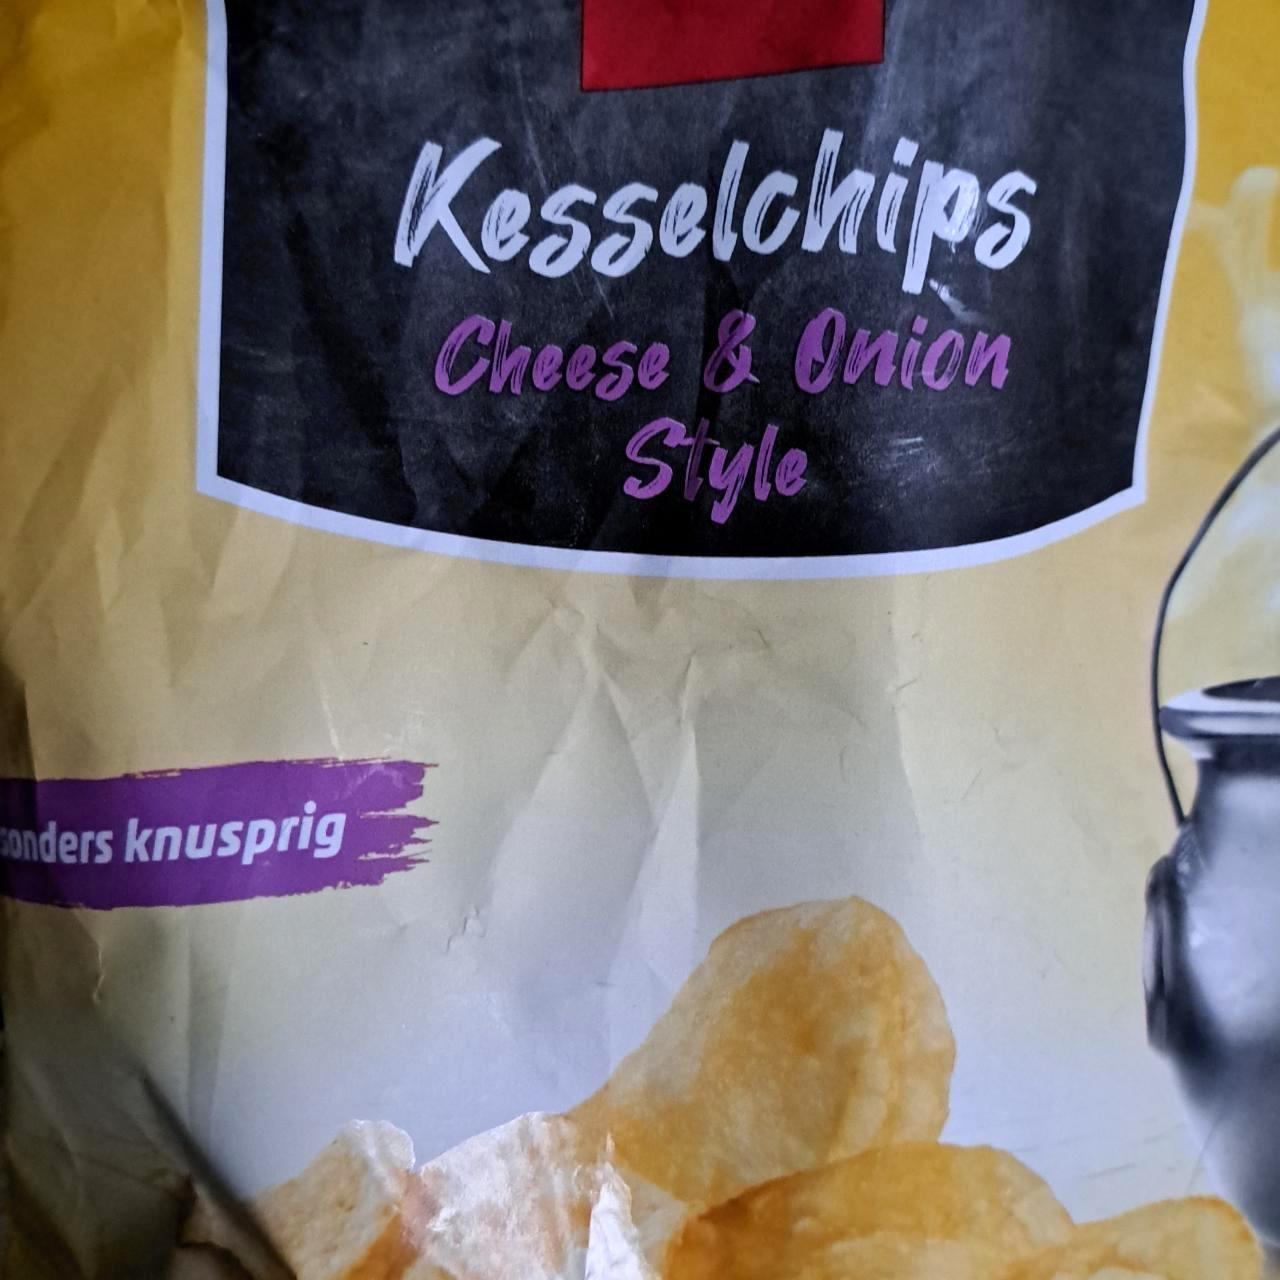 Képek - Kesselchips Cheese & Onion style Penny